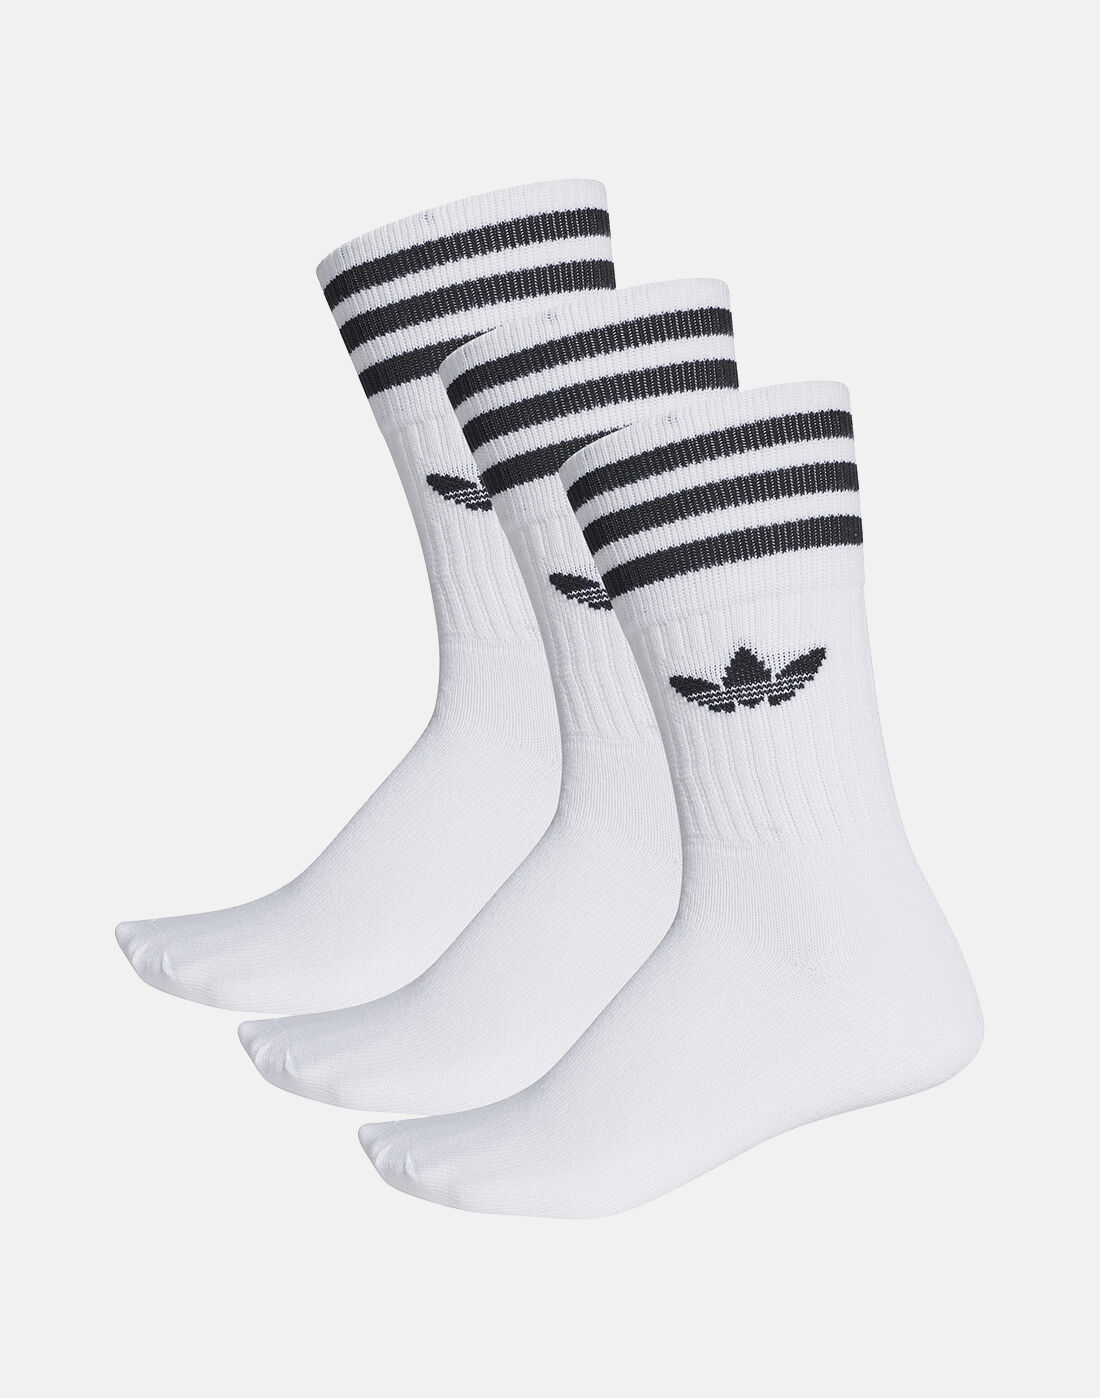 adidas trefoil socks